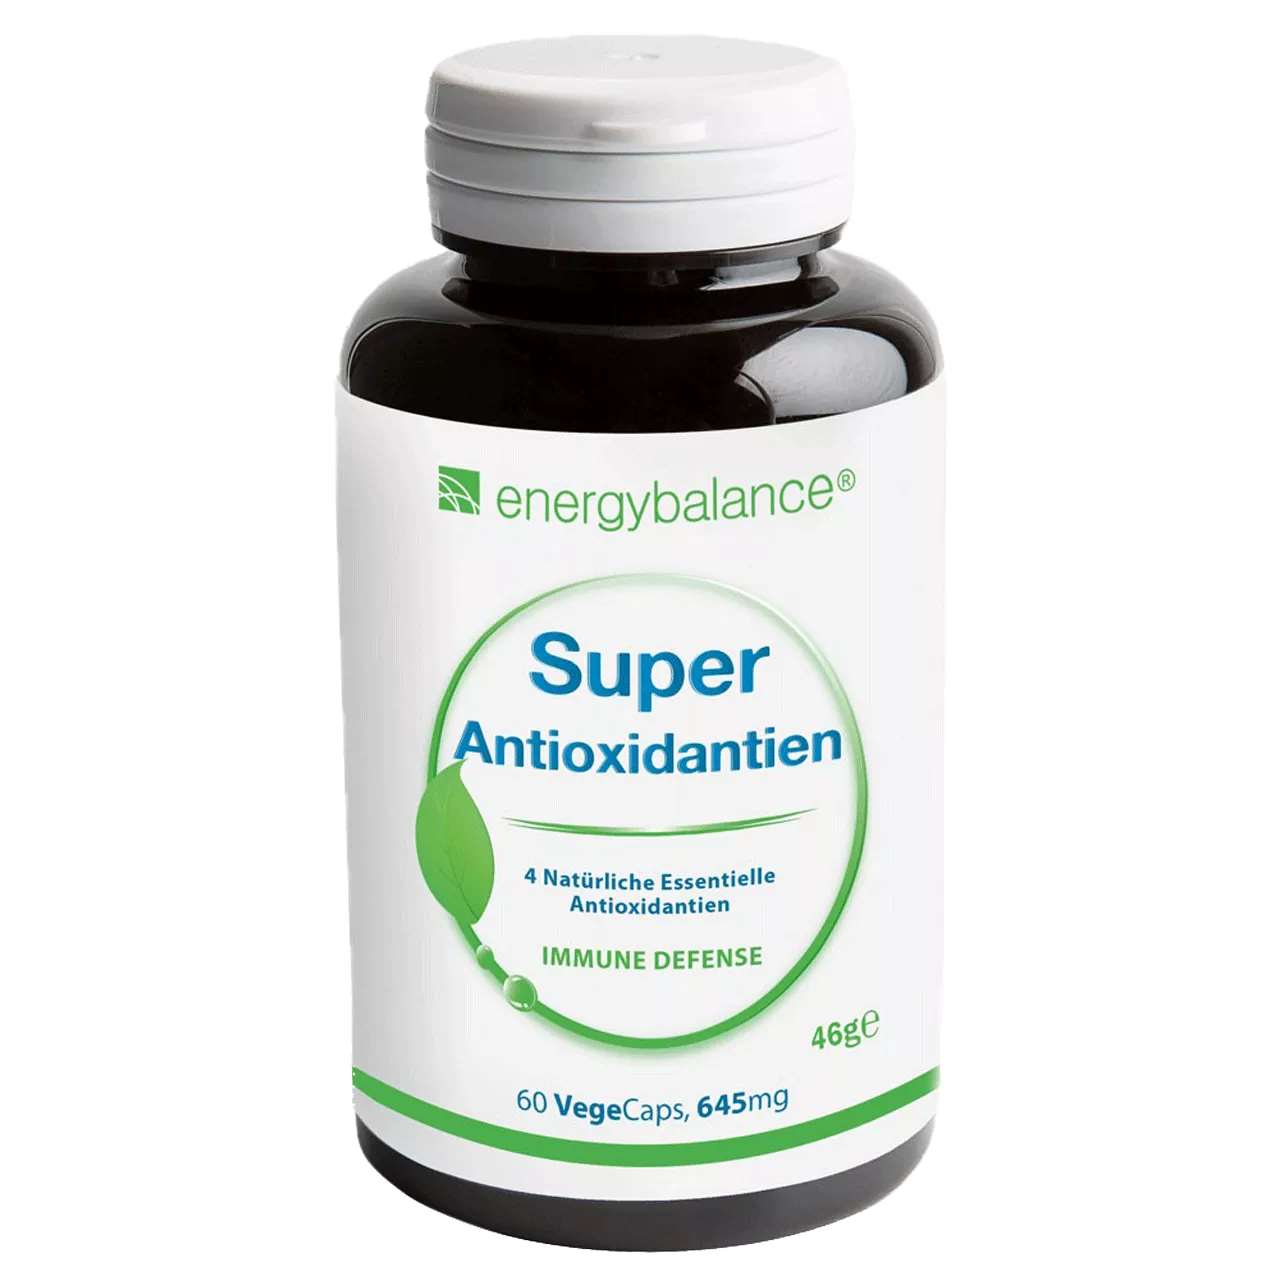 Super Antioxidantien, 60 VegeCaps